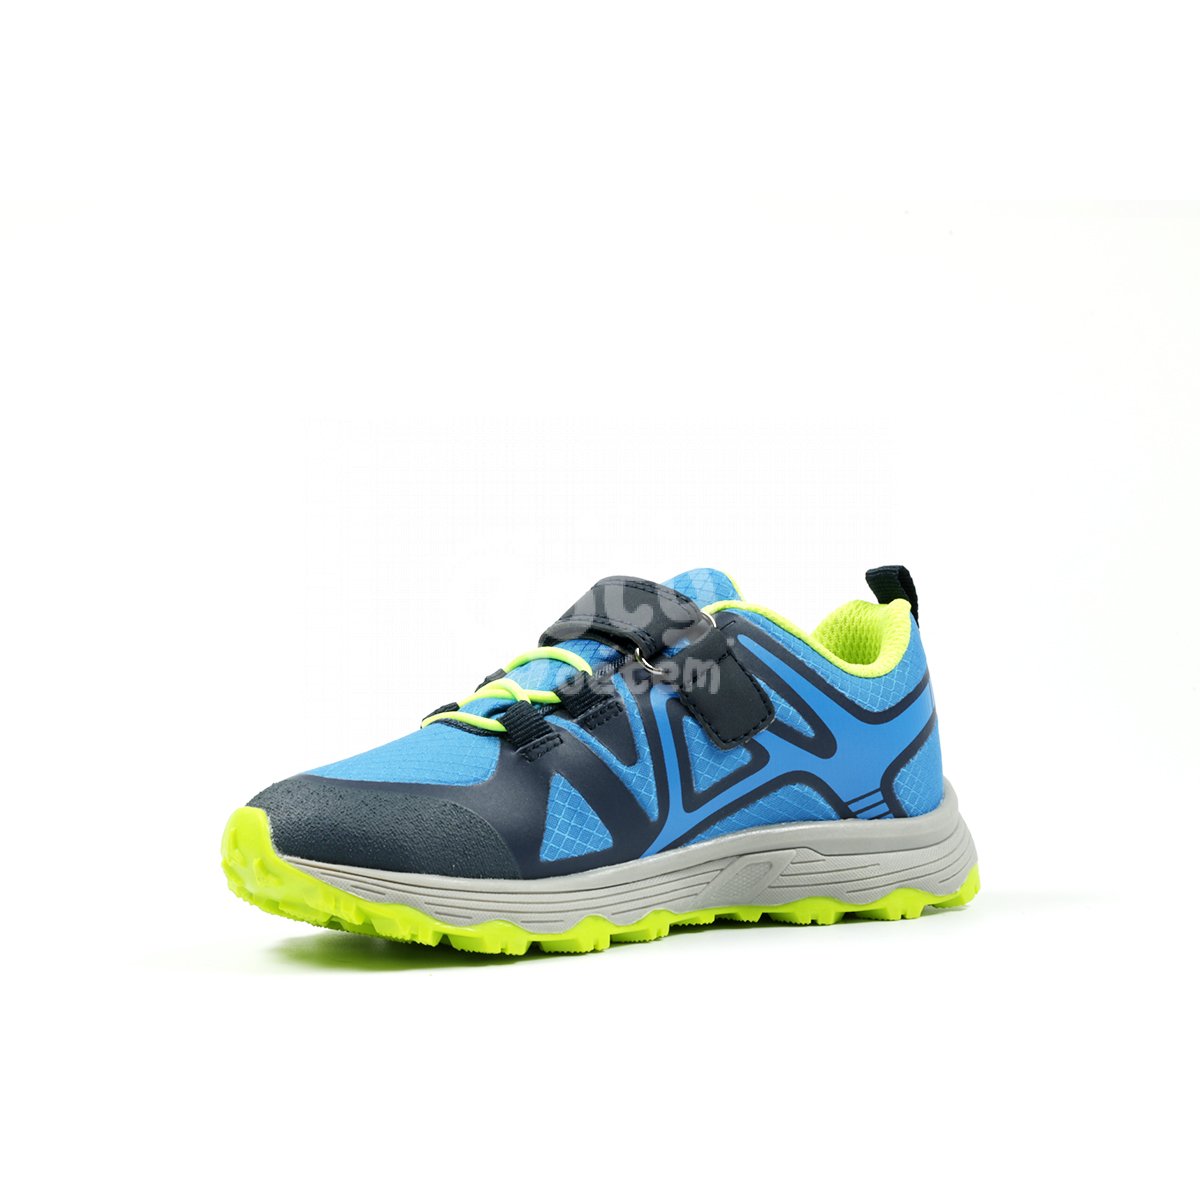 Sportovní obuv TR-3 Richter 7872-3192-6901 modrá